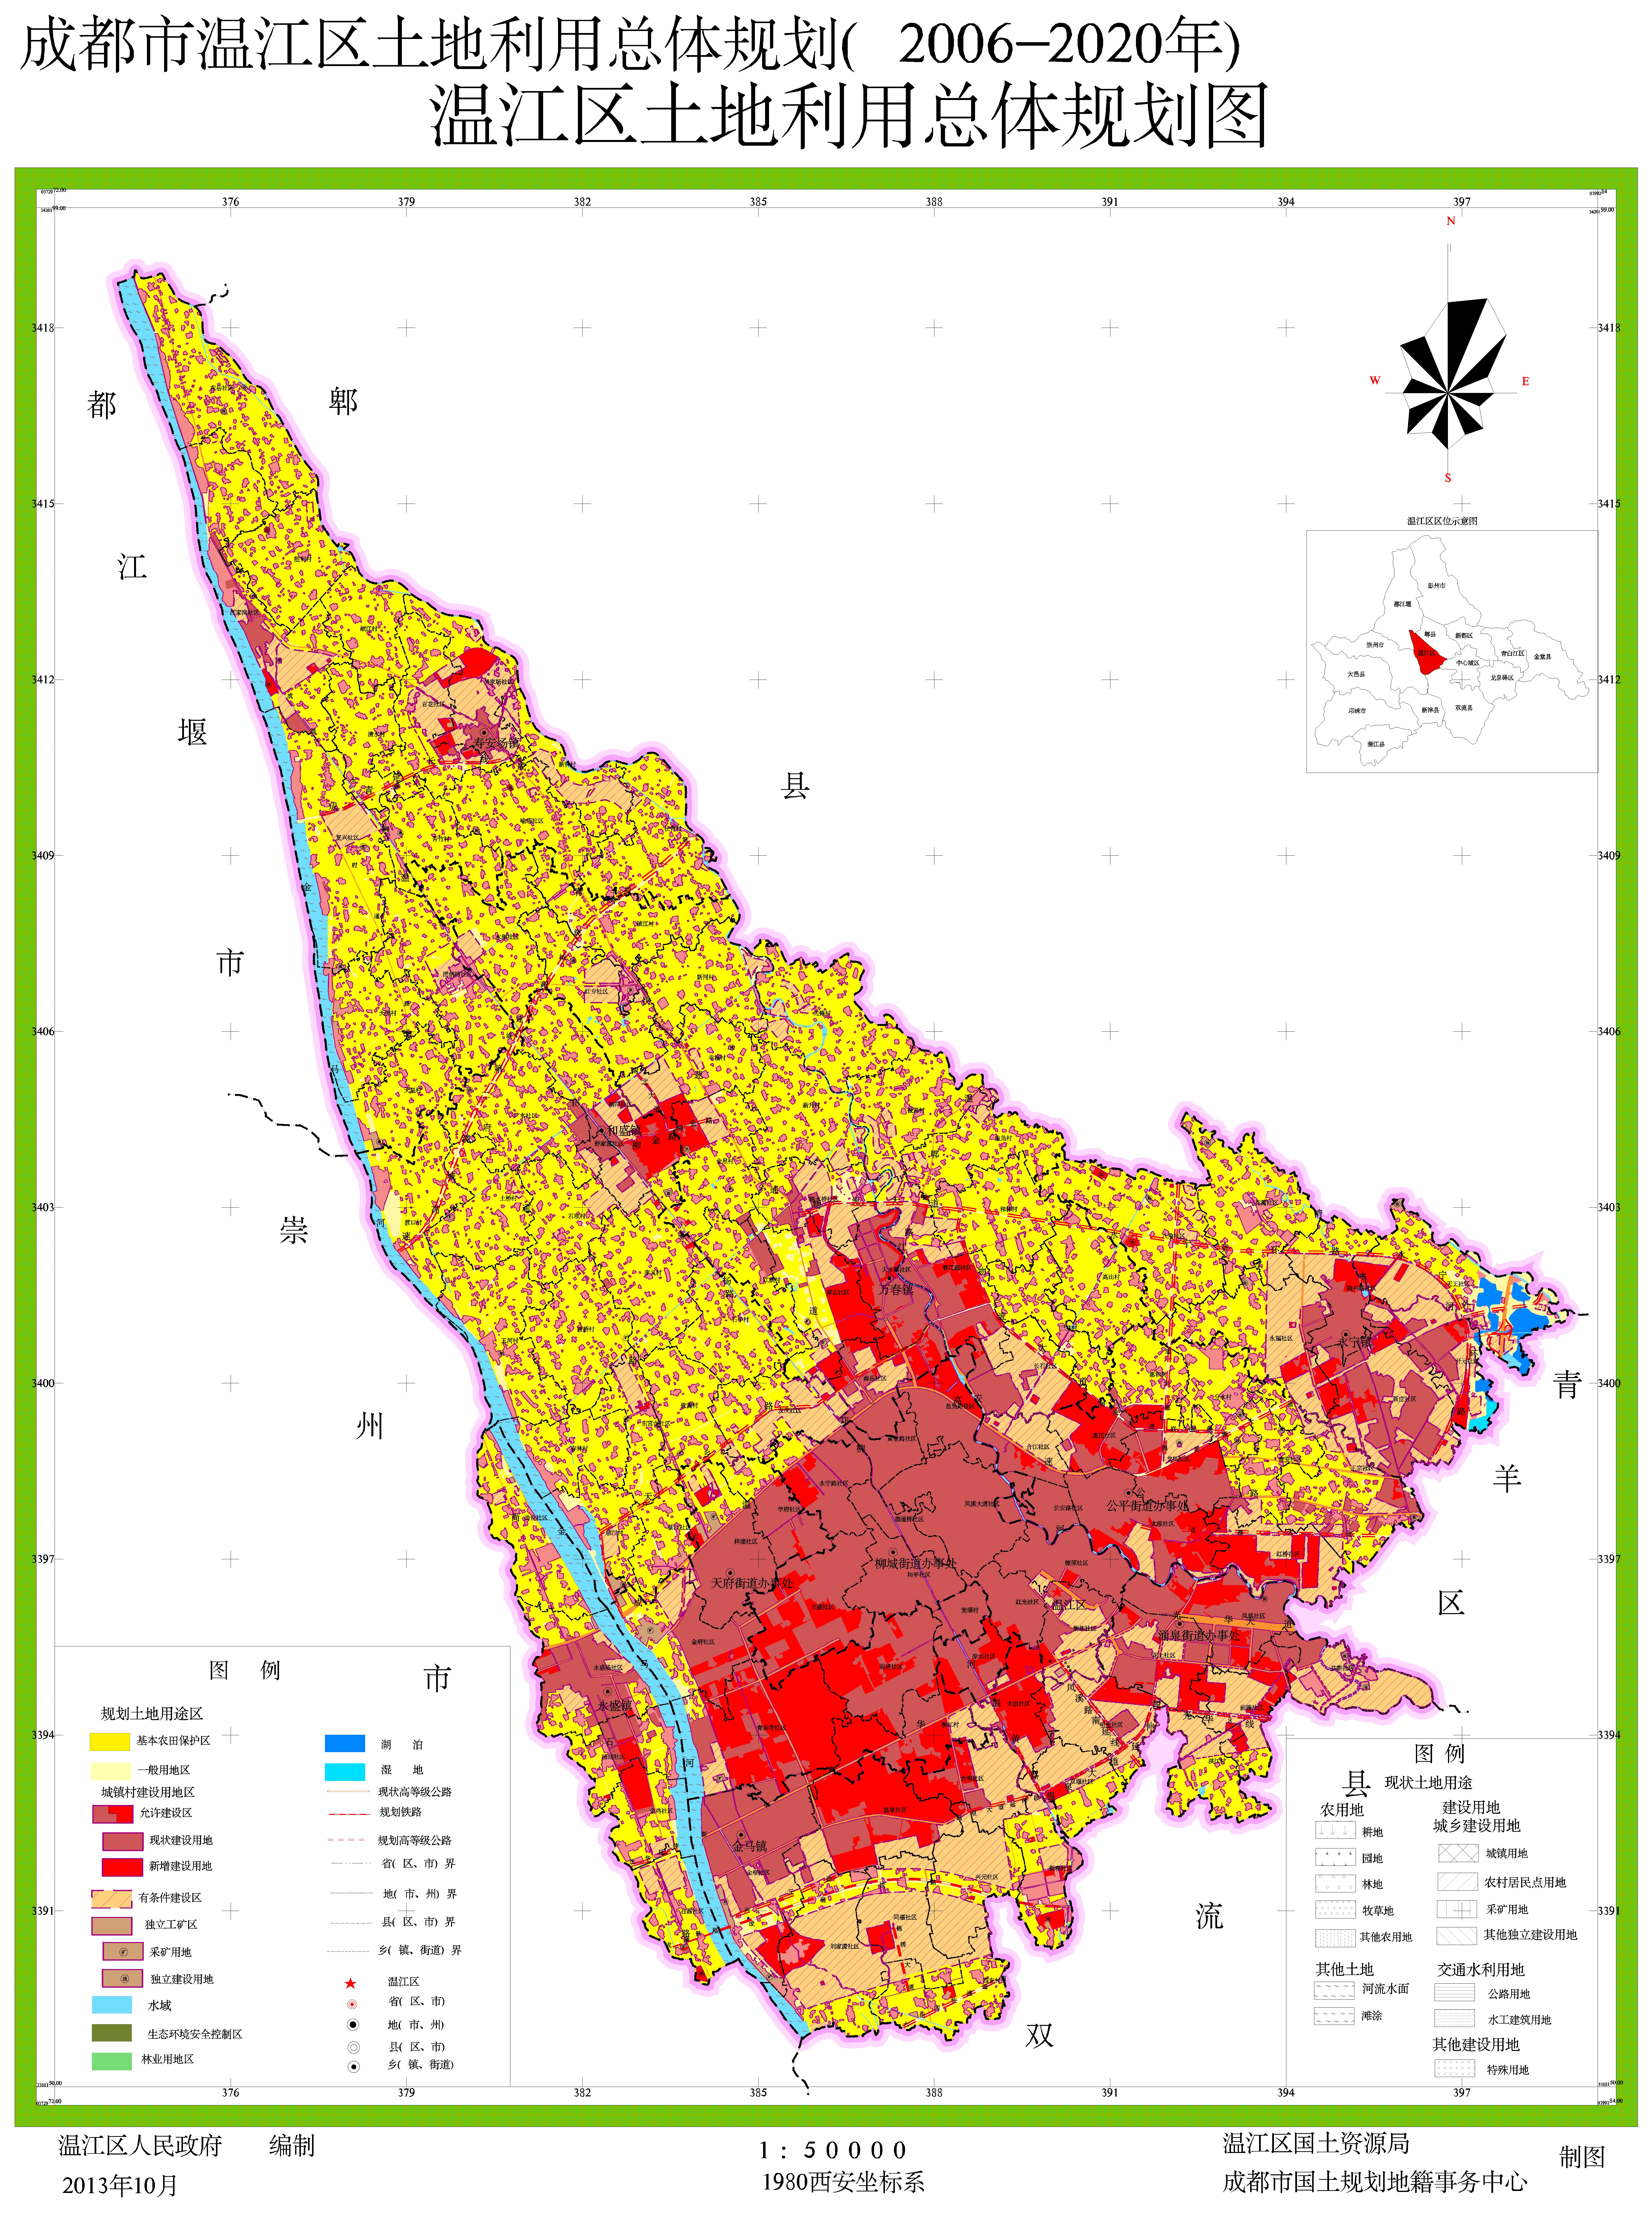 温江区土地利用总体规划图(2006-2020年)-已过法定期限